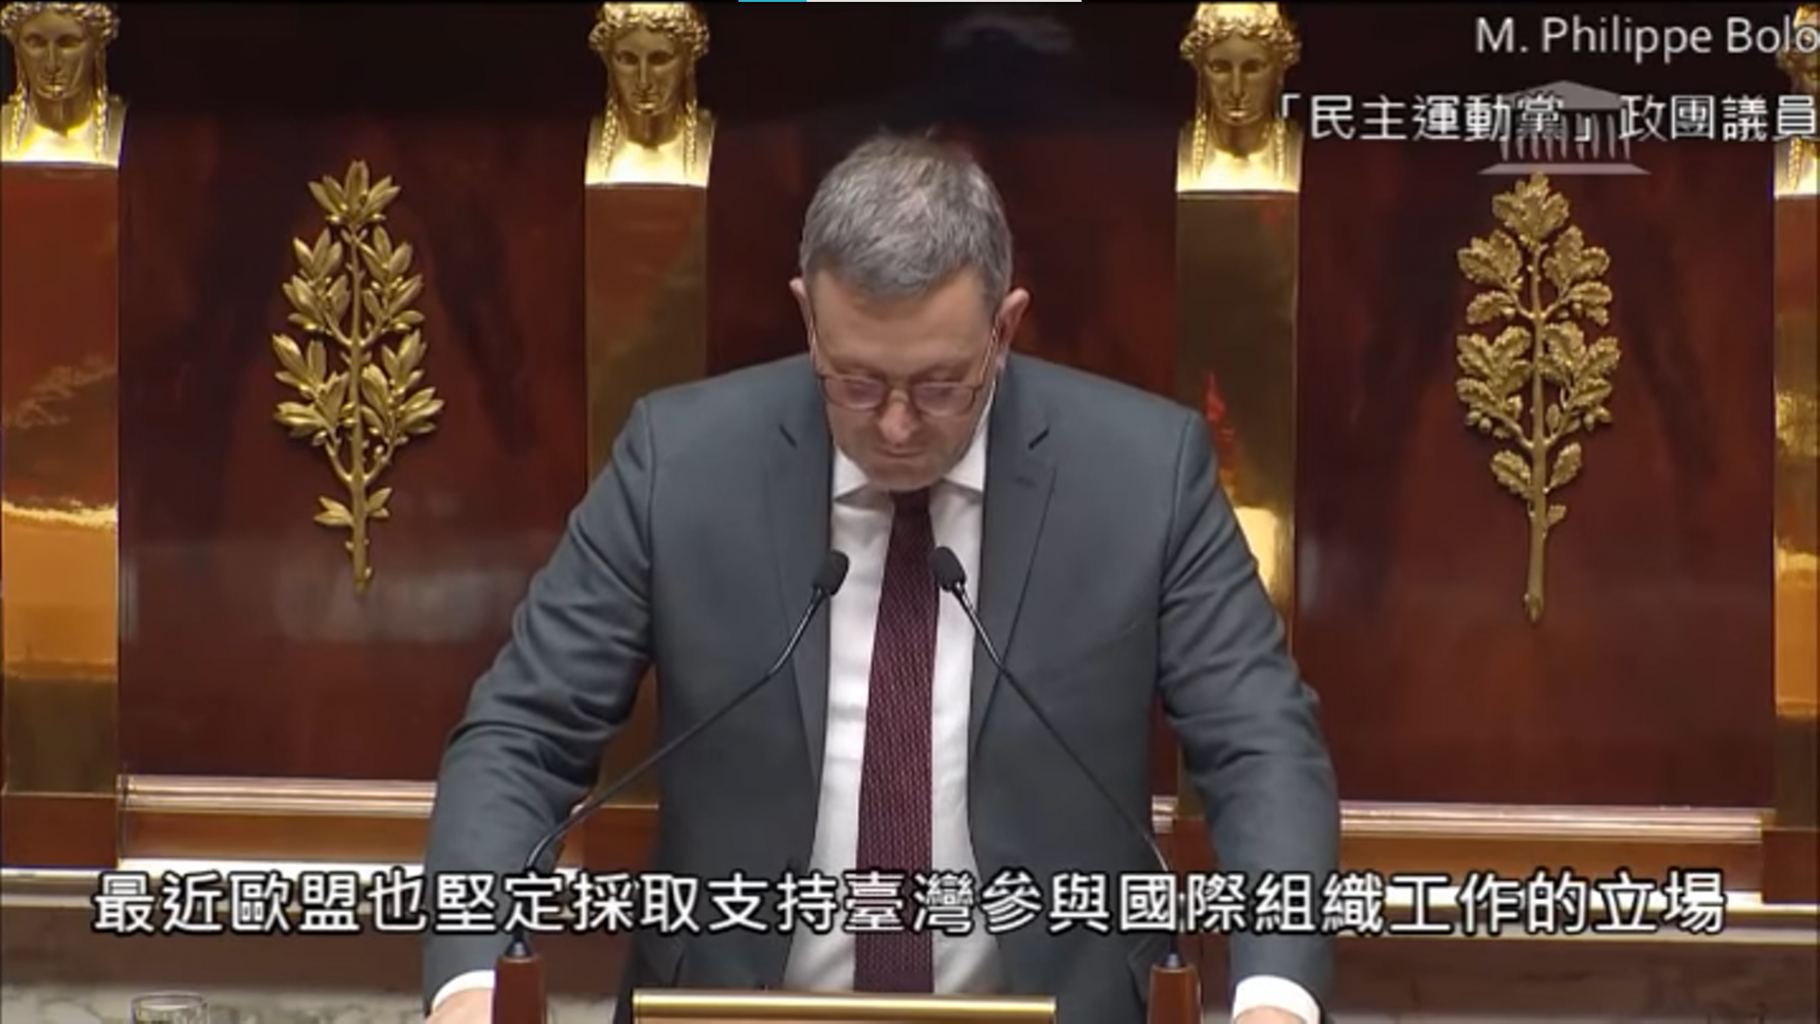 法國國民議會以39票贊成、2票反對、3票棄權通過支持台灣參與國際組織決議案。圖/翻攝自網路